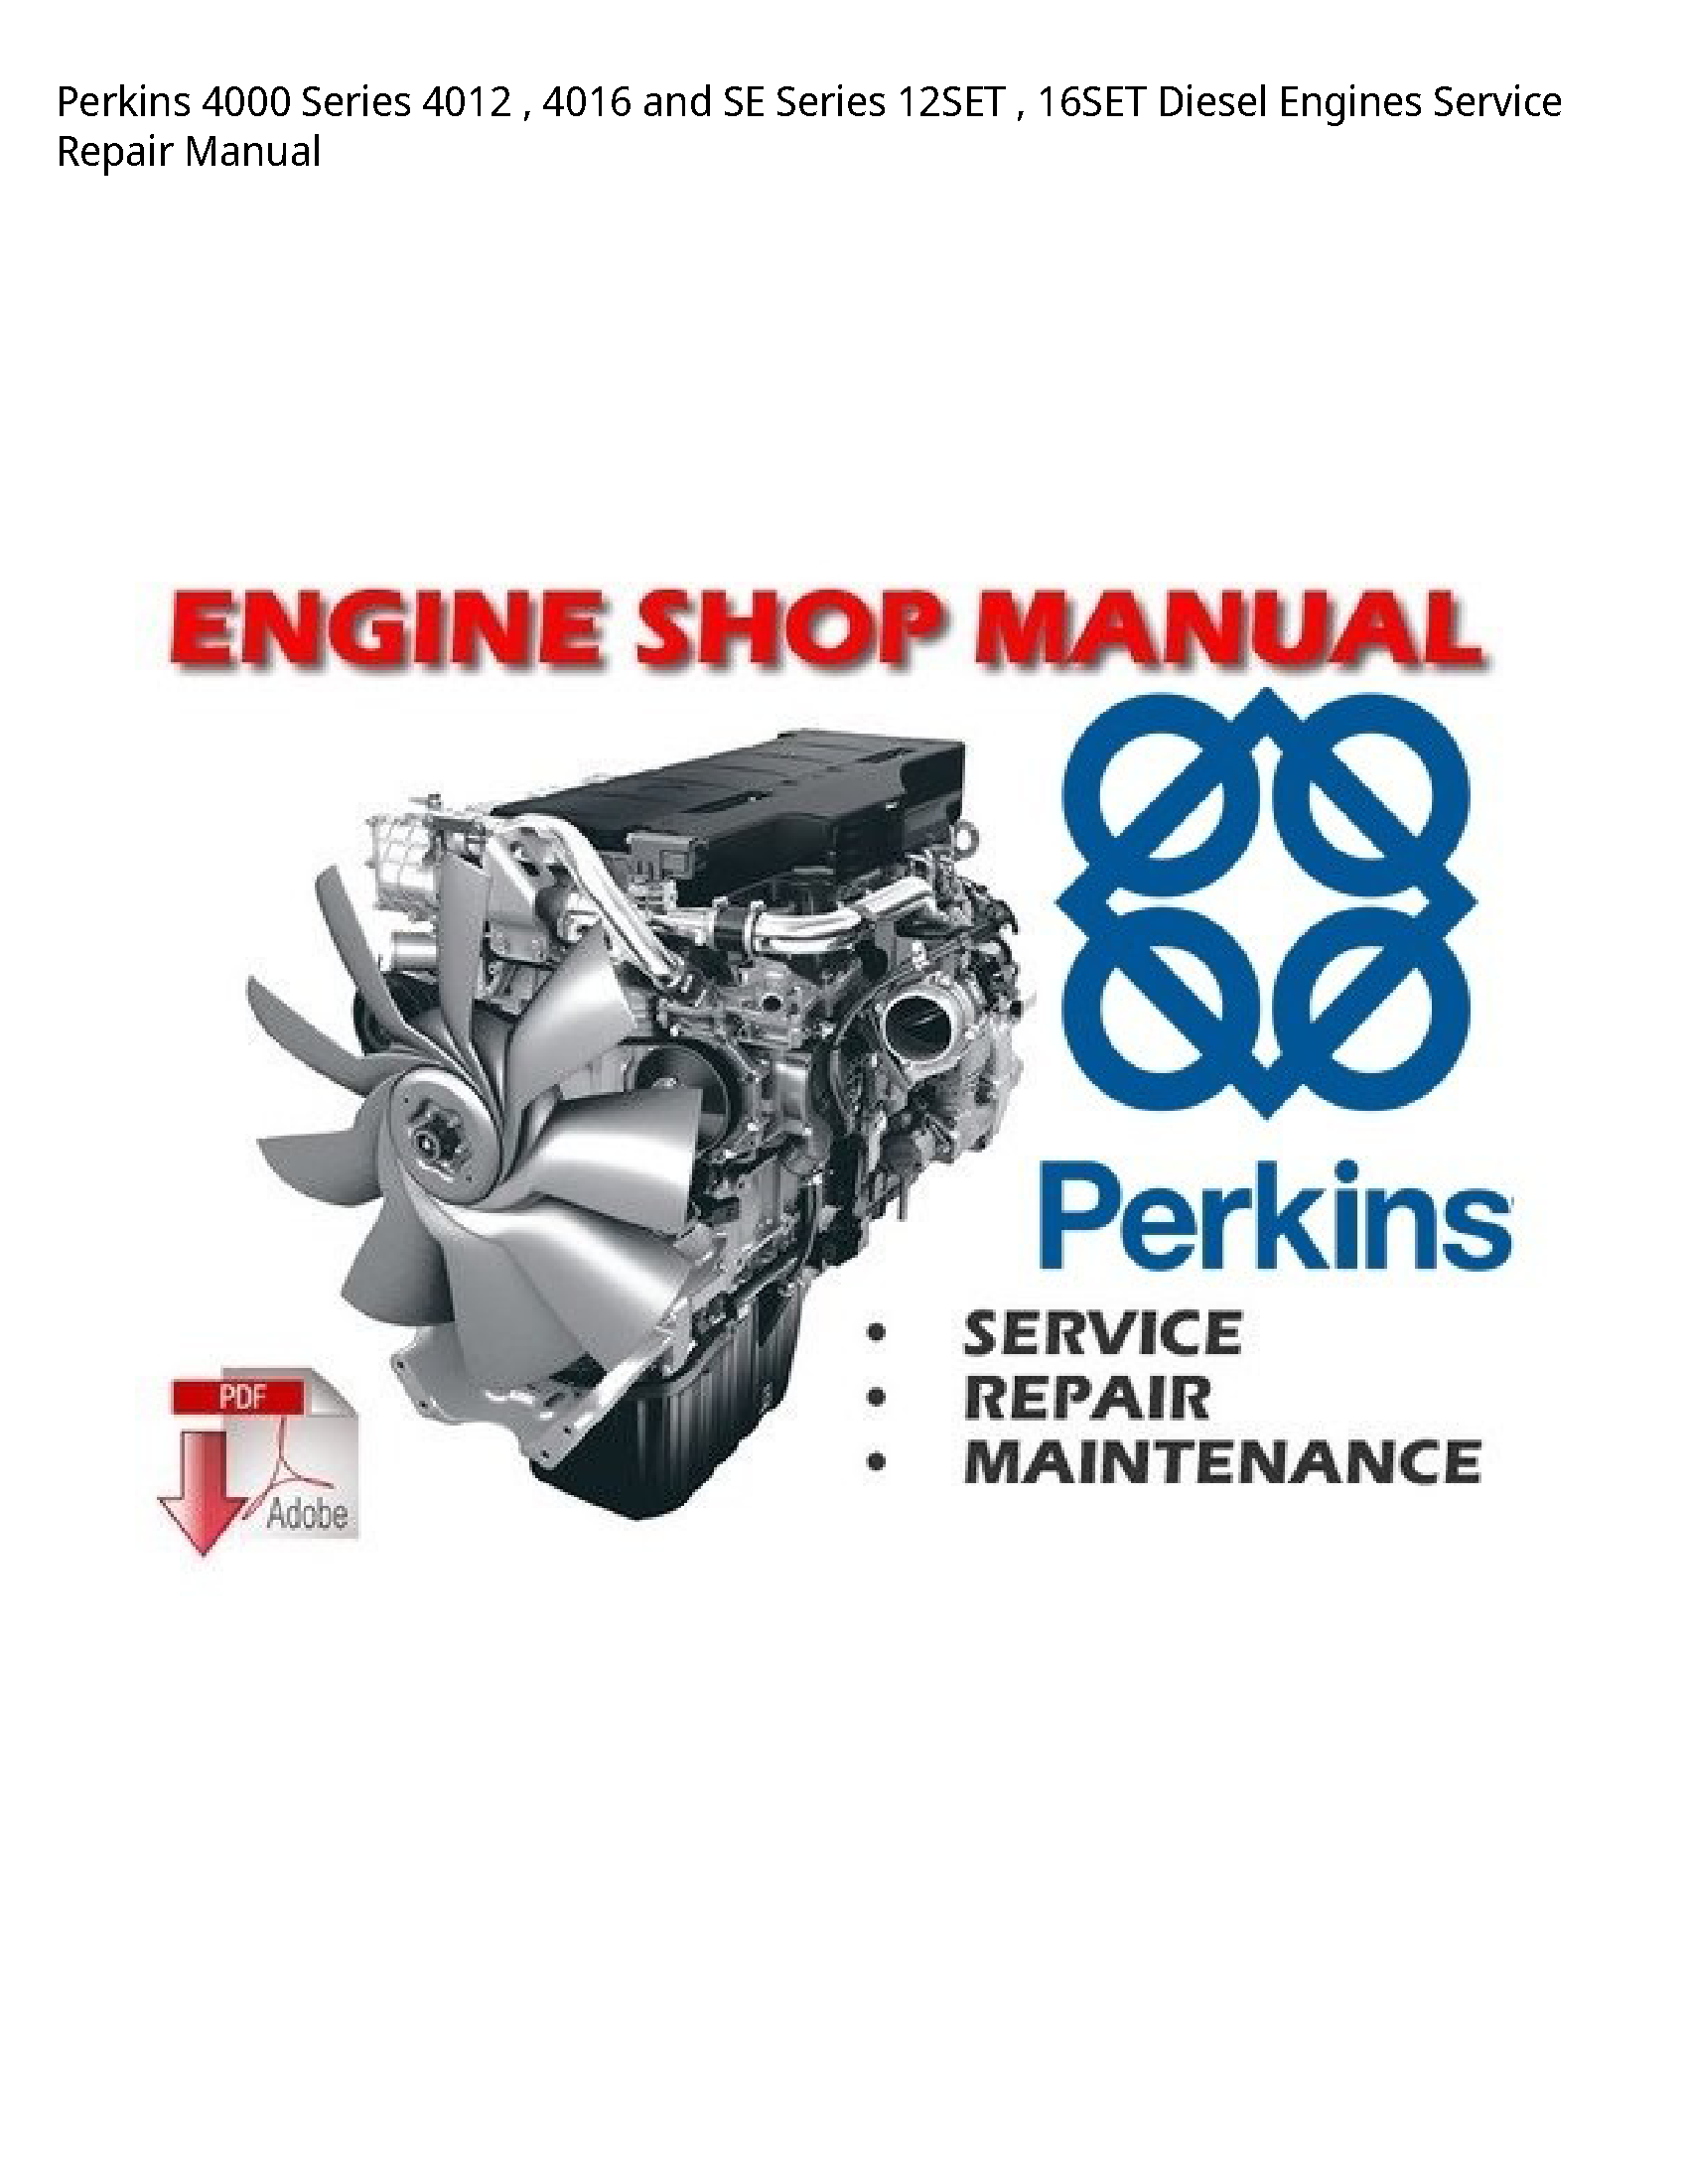 Perkins 4000 Series  SE Series Diesel Engines manual